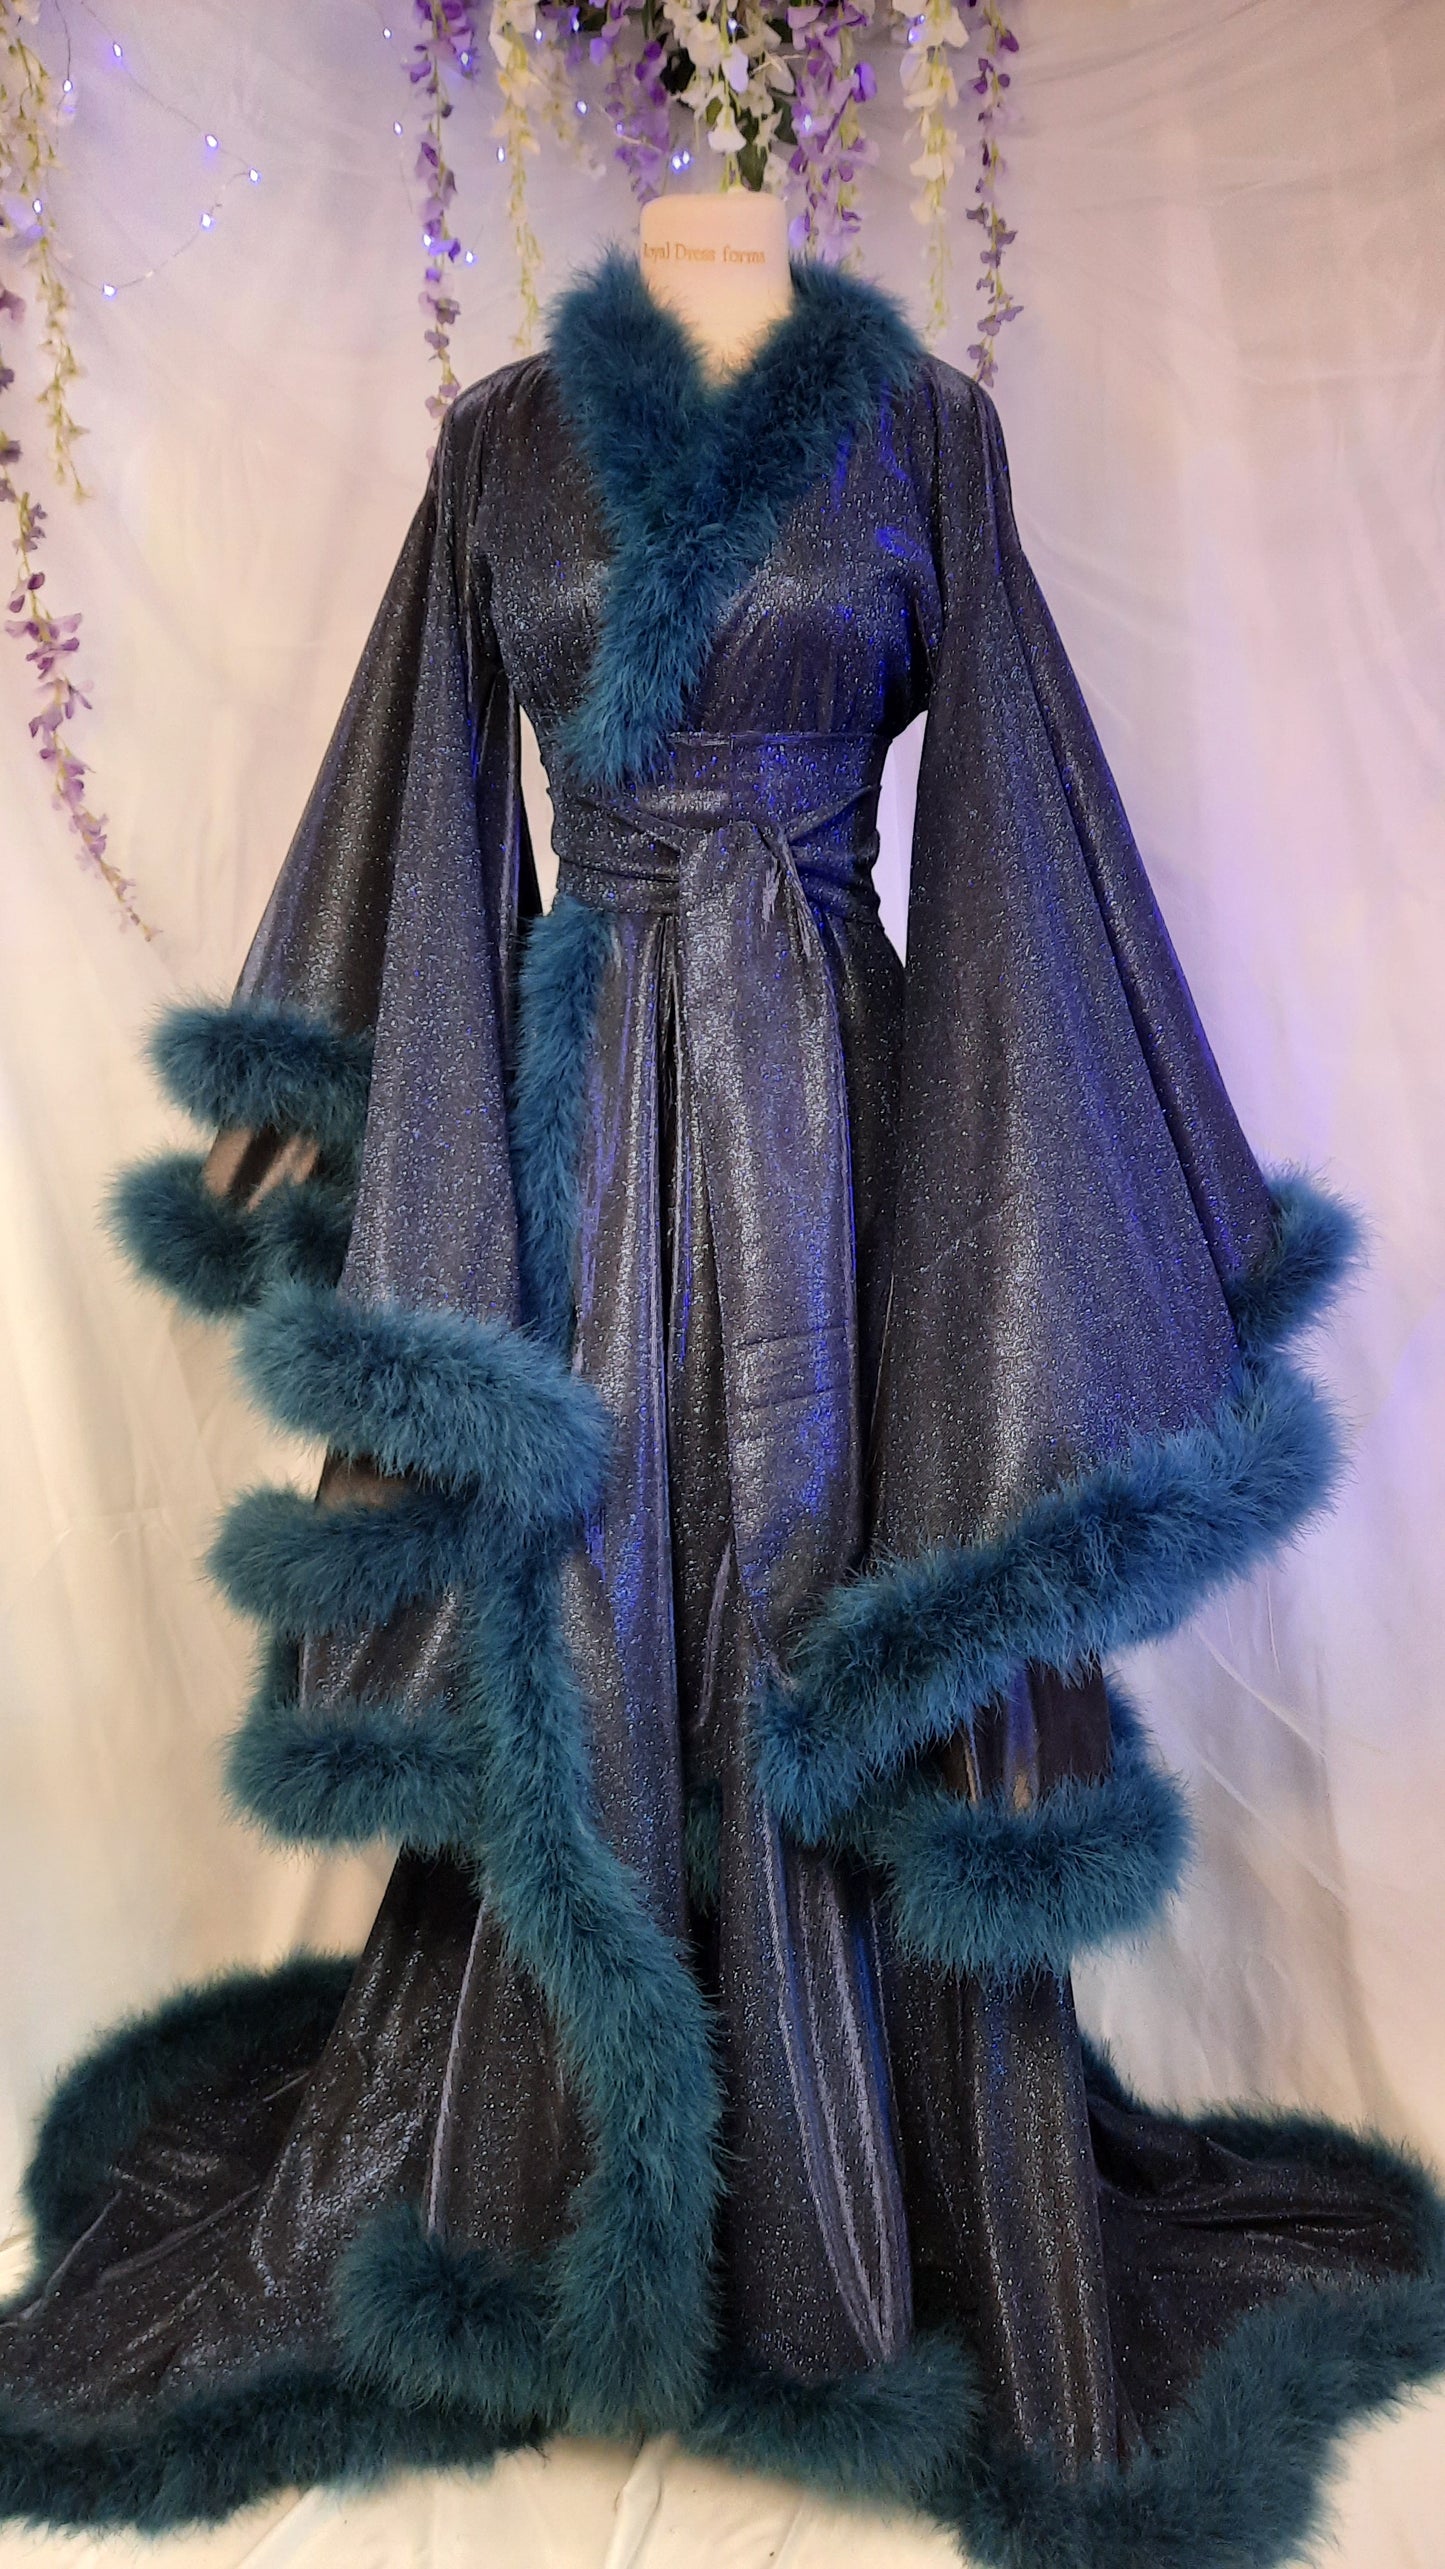 Rich widow robe in glitter